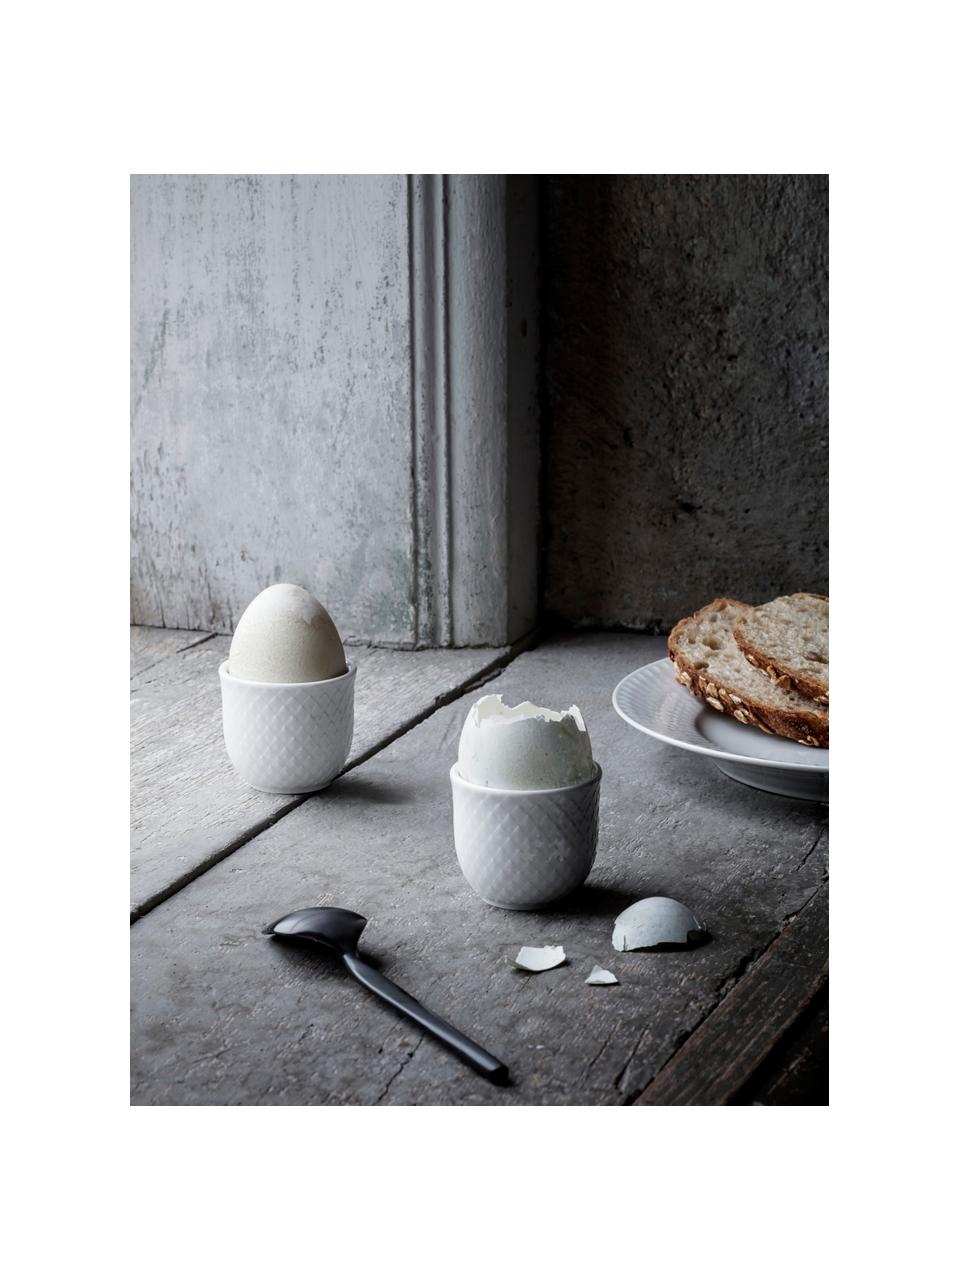 Soportes de huevo de porcelana con relieves Rhombe, 2 uds., Porcelana, Blanco, Ø 5 x Al 5 cm